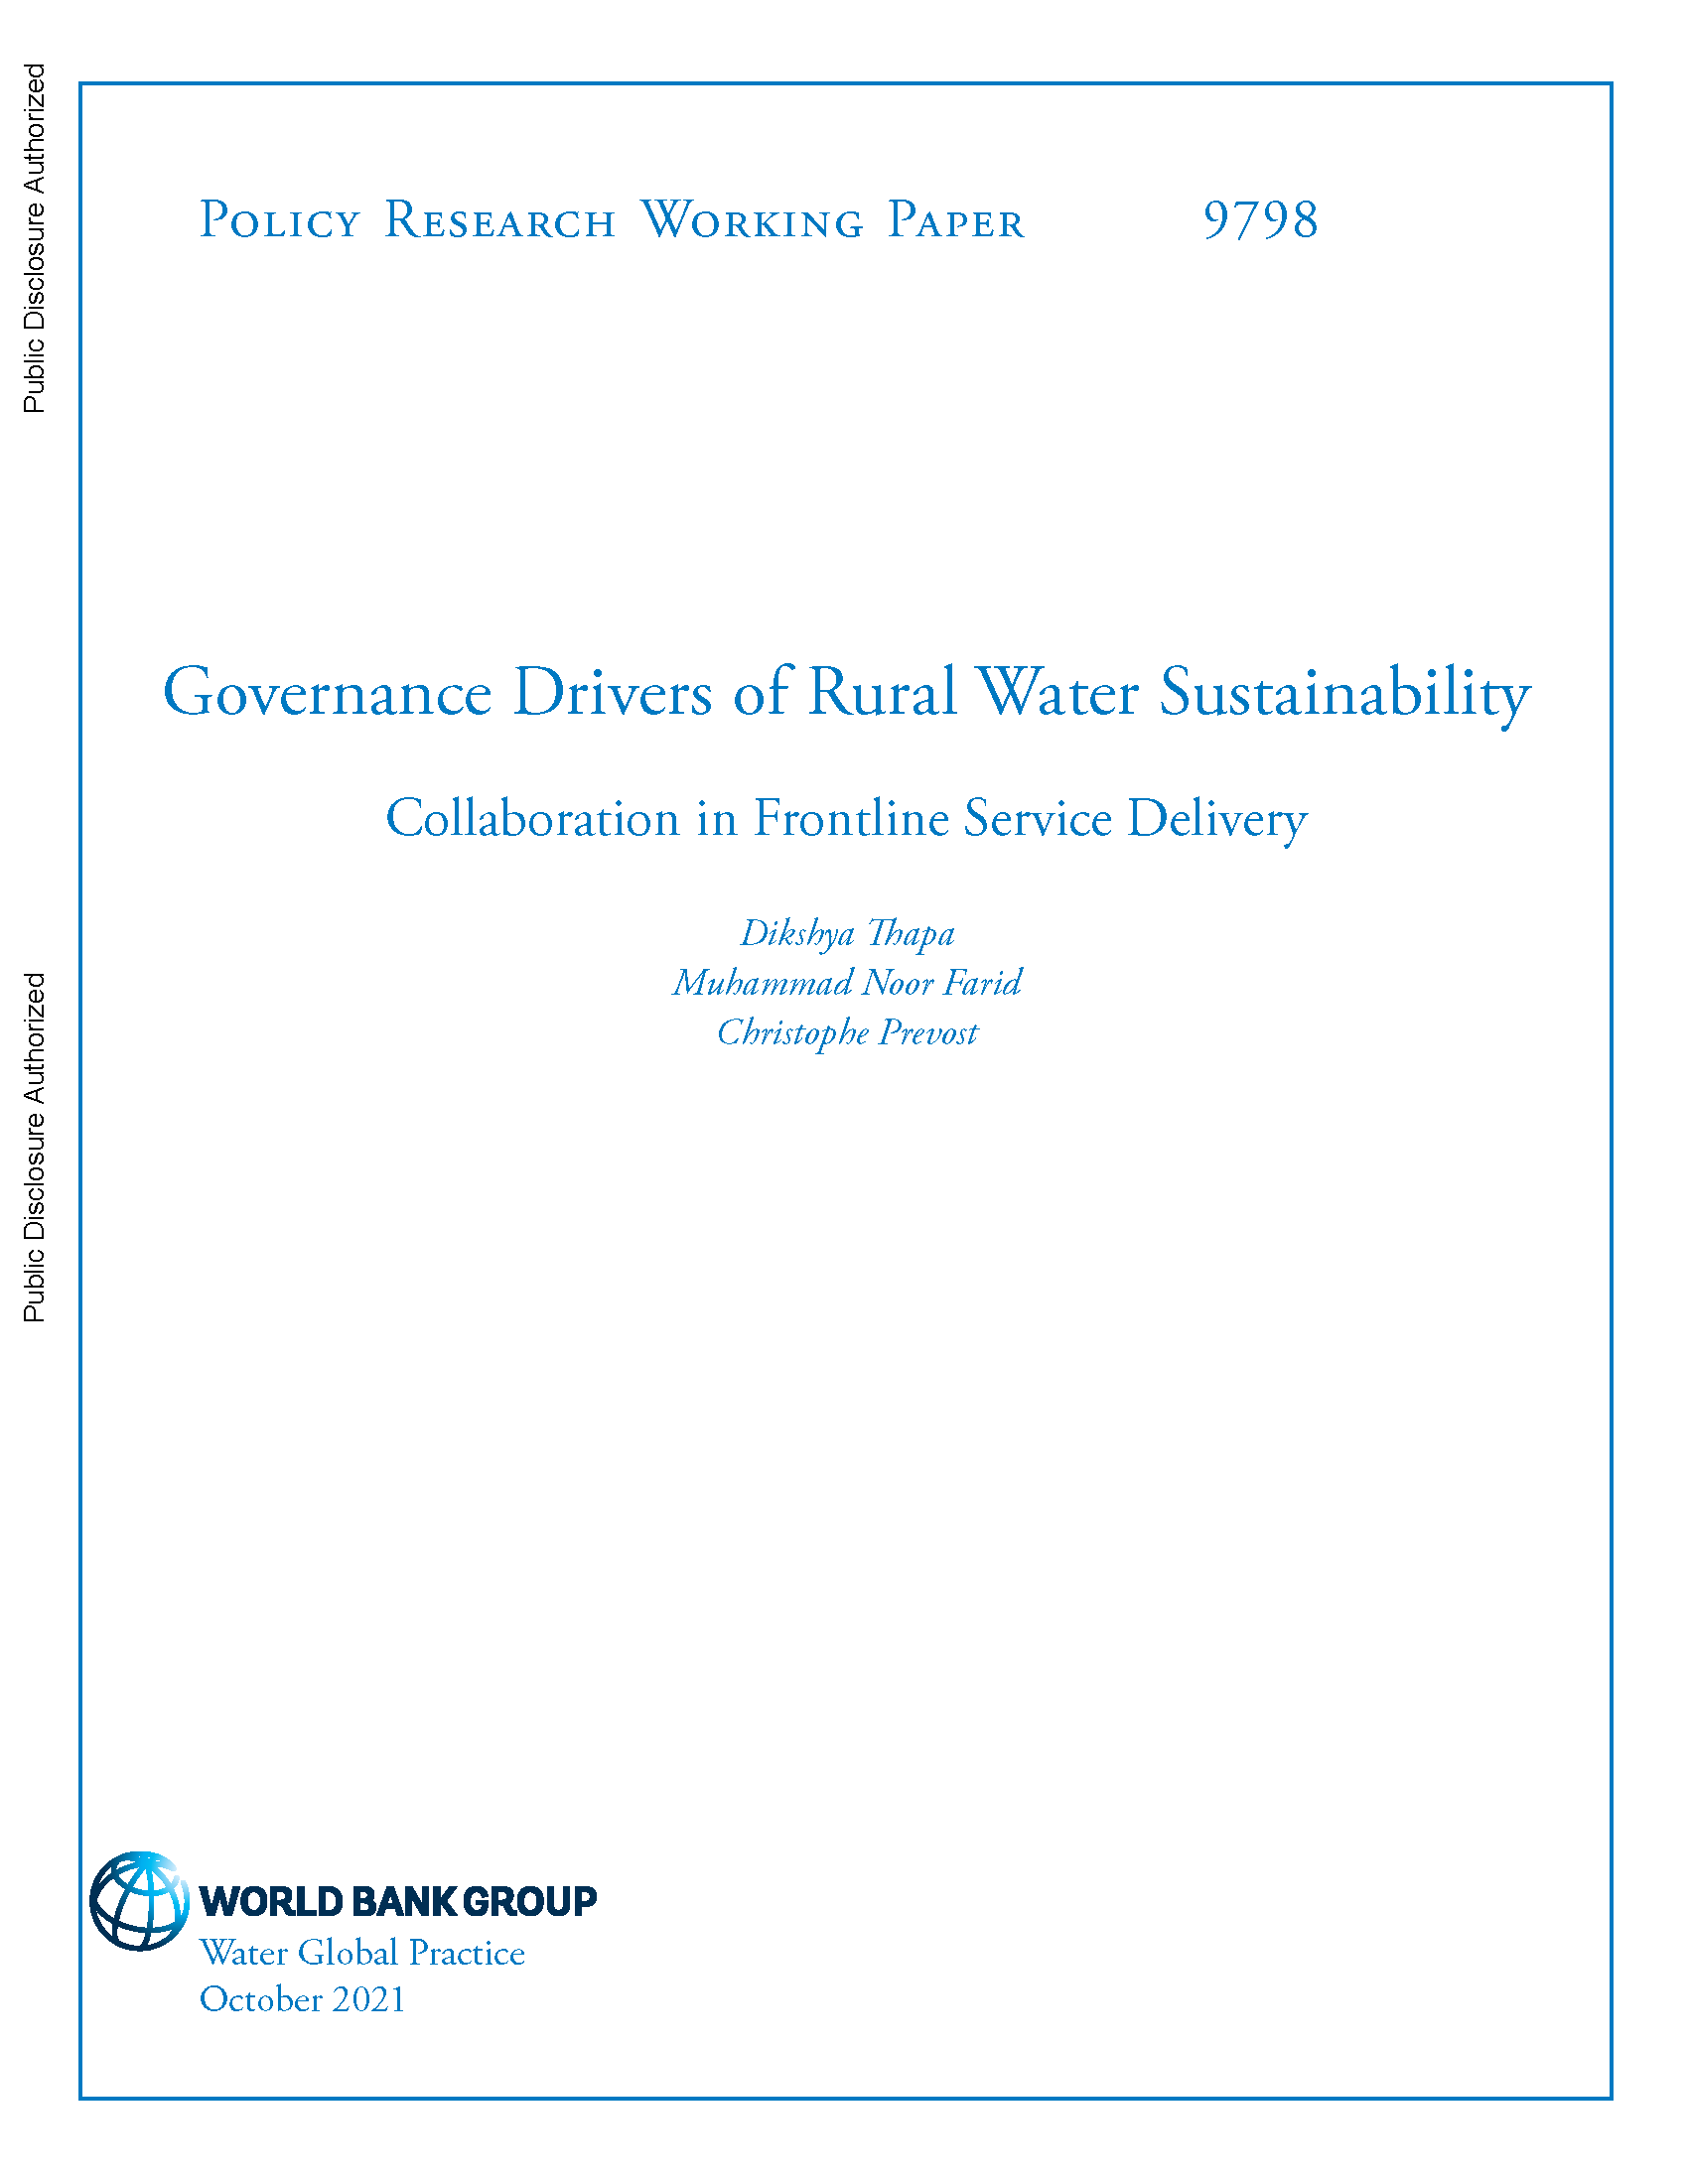 Page de couverture de Moteurs de gouvernance de la durabilité de l'eau en milieu rural : collaboration dans la prestation de services de première ligne